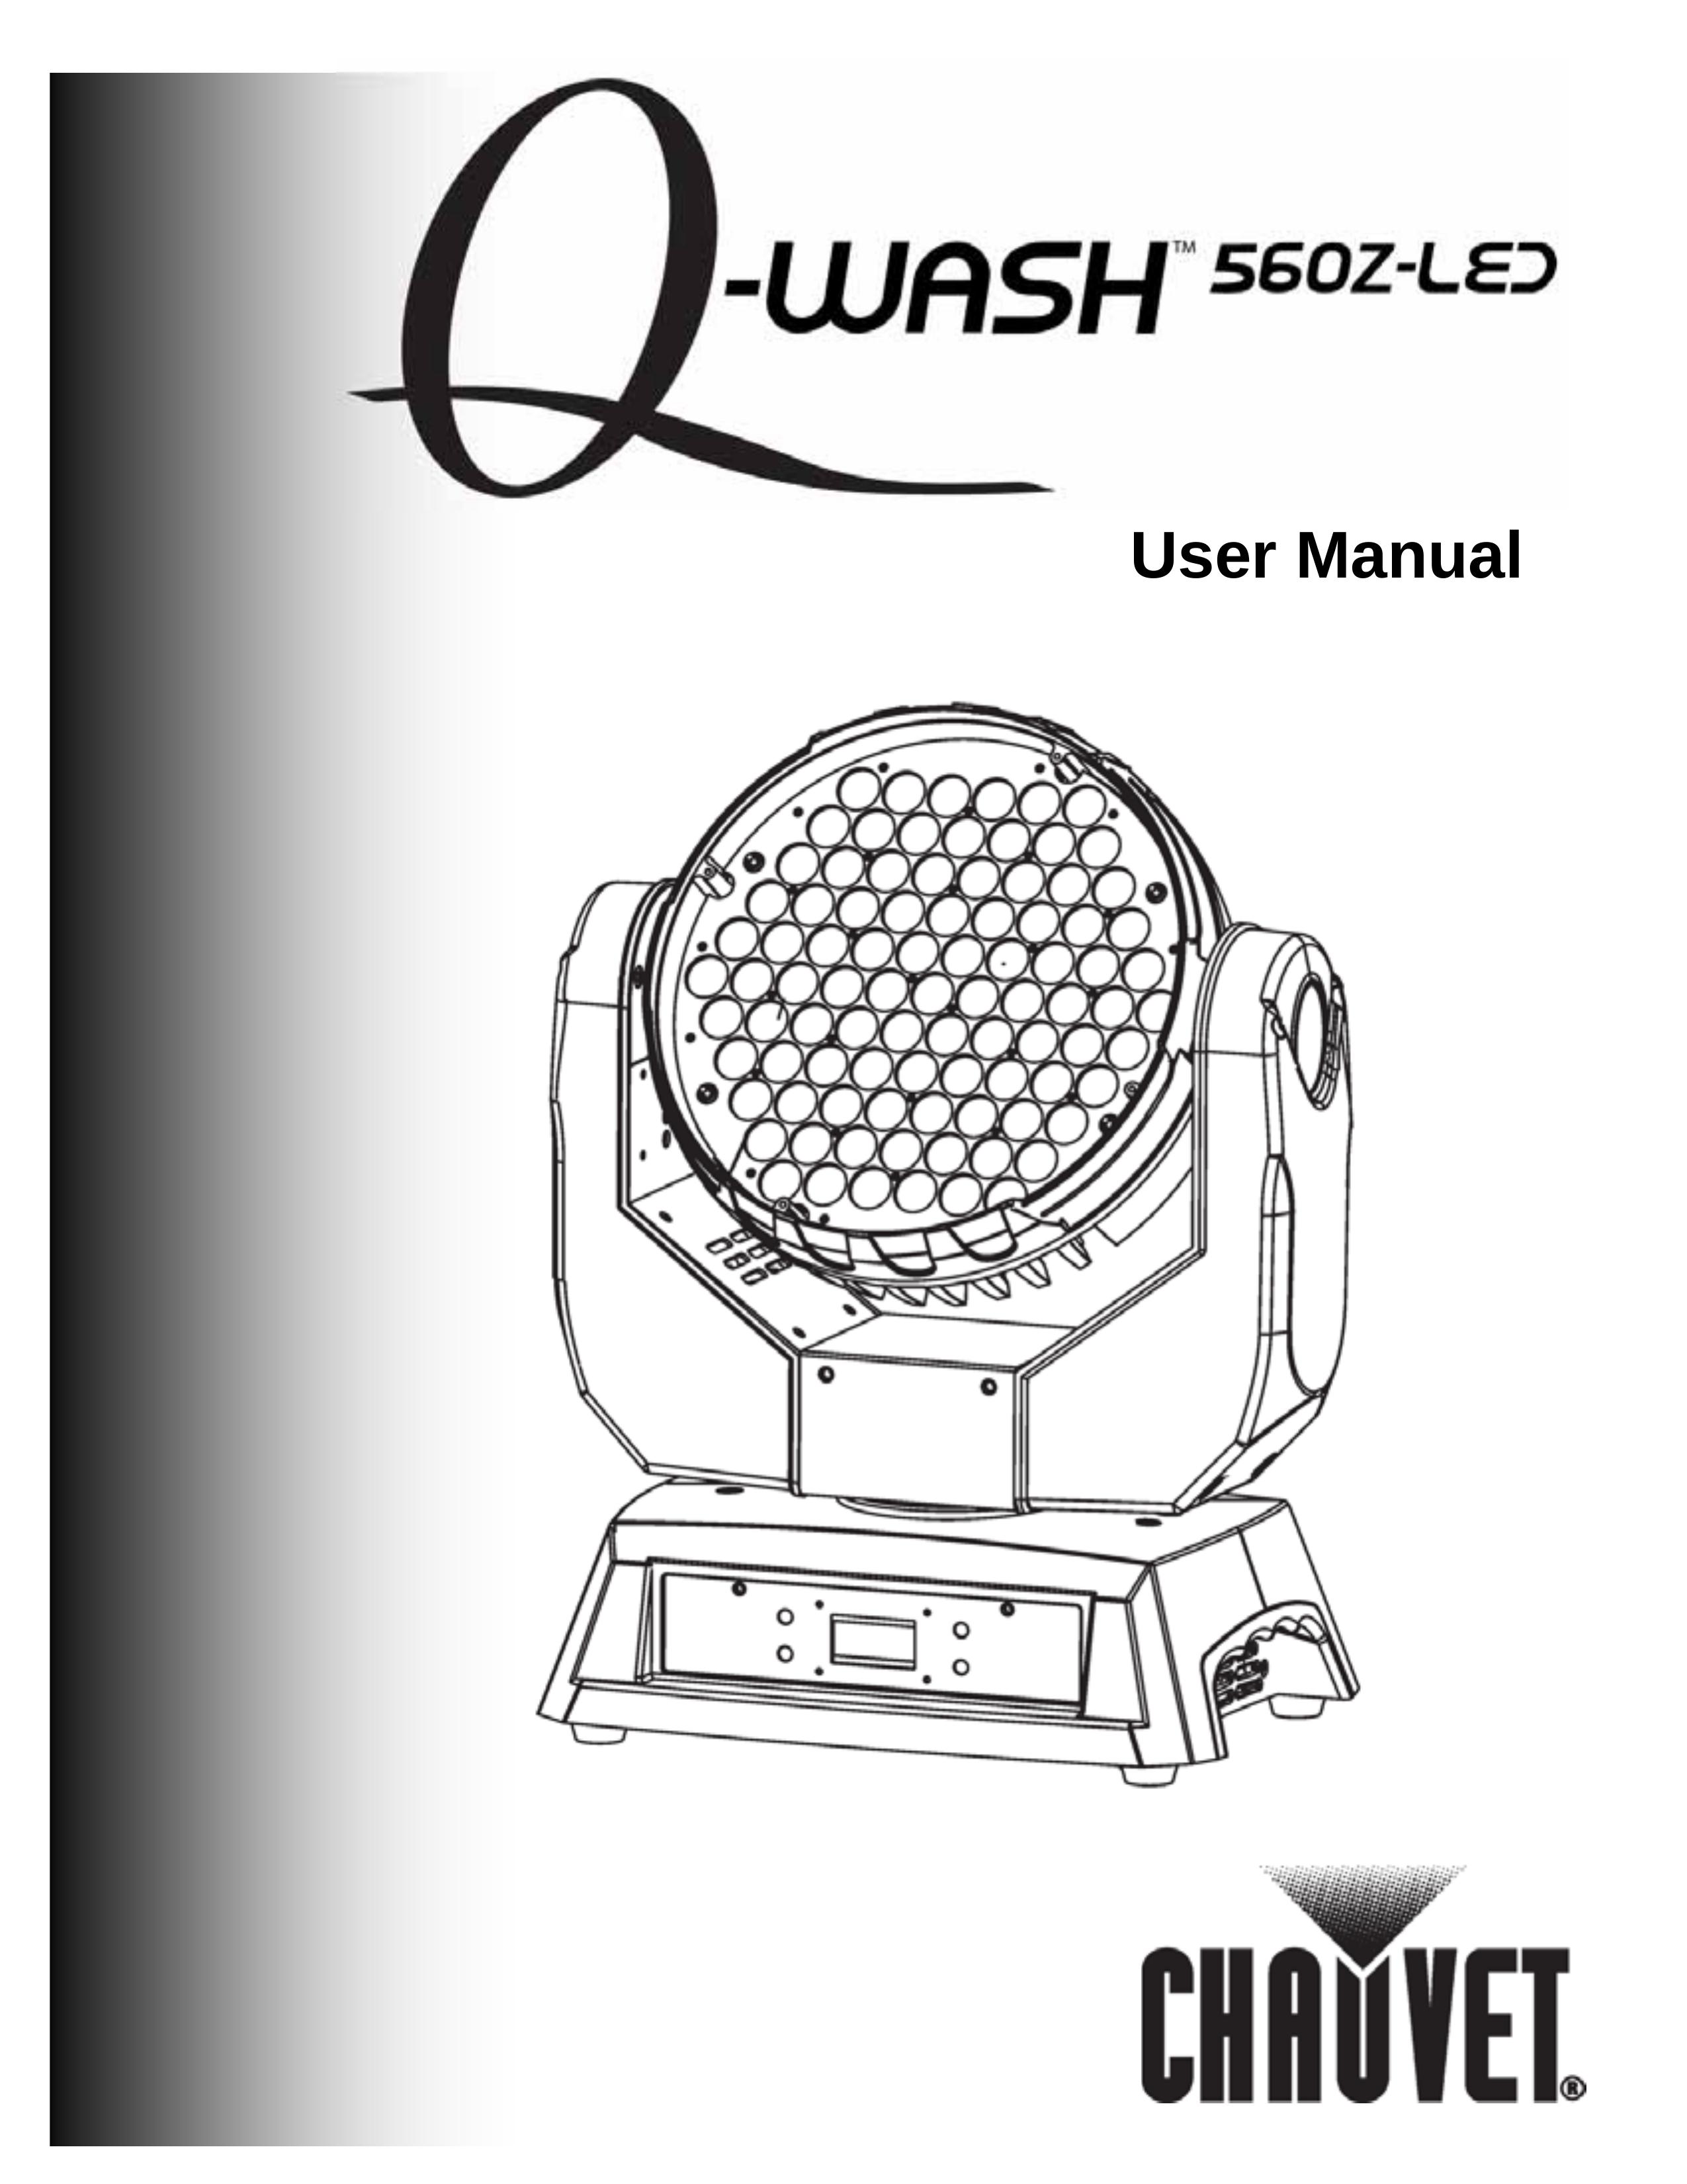 Chauvet 560z-led Marine Lighting User Manual